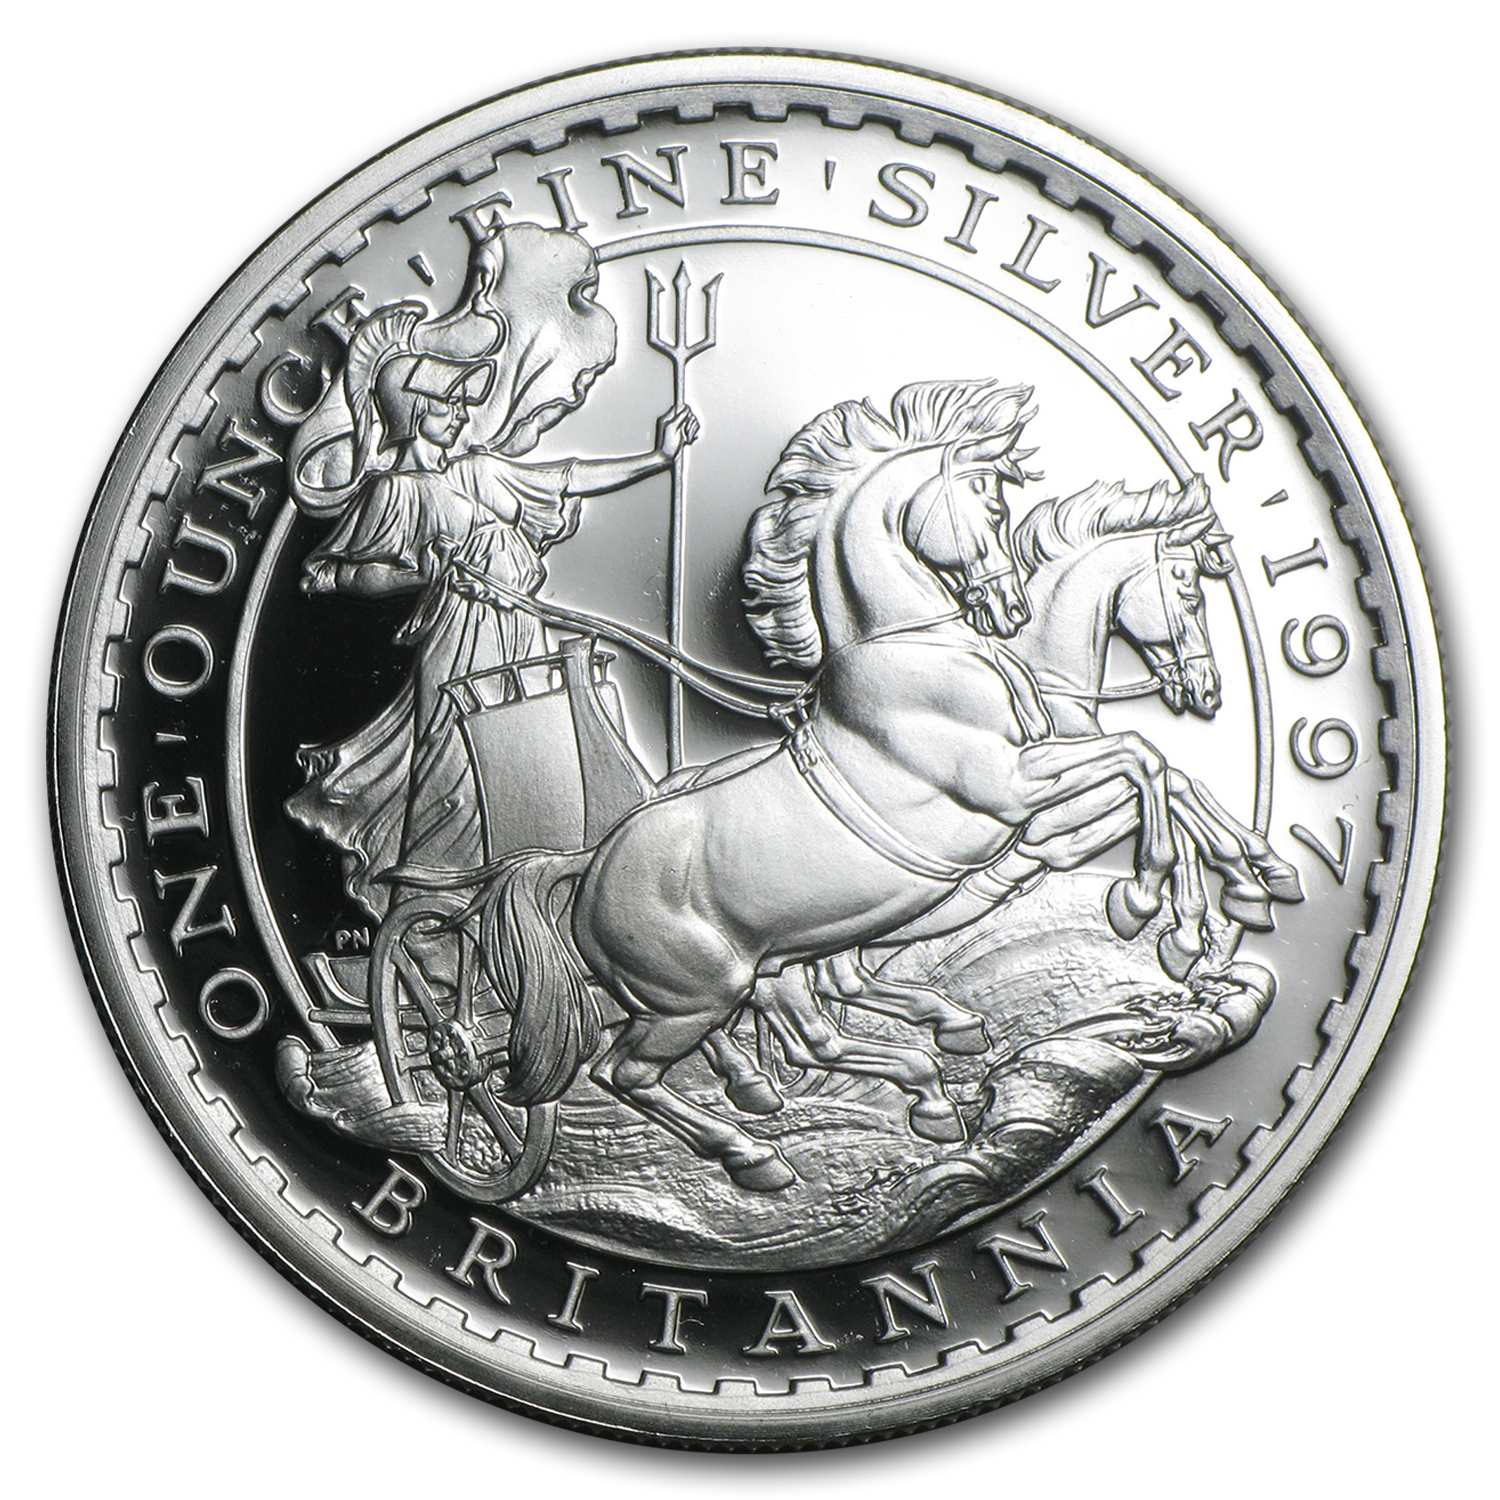 1oz silver coins value